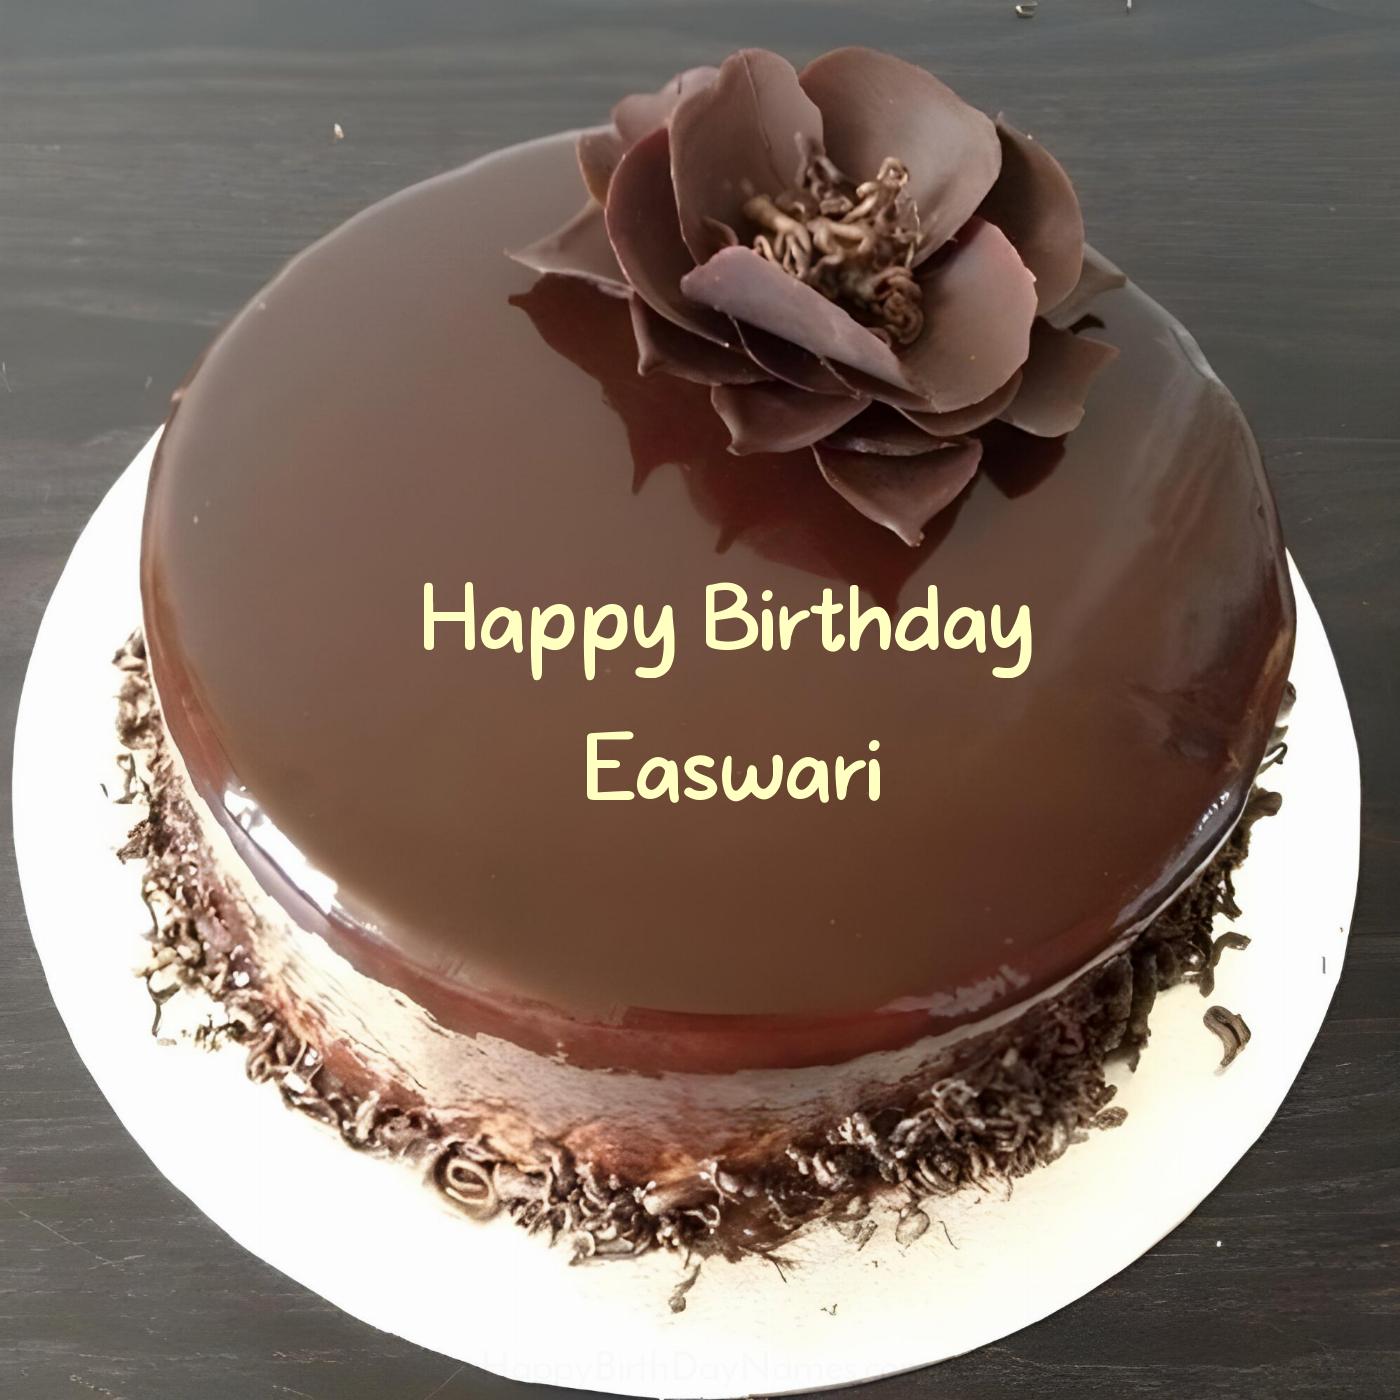 Happy Birthday Easwari Chocolate Flower Cake